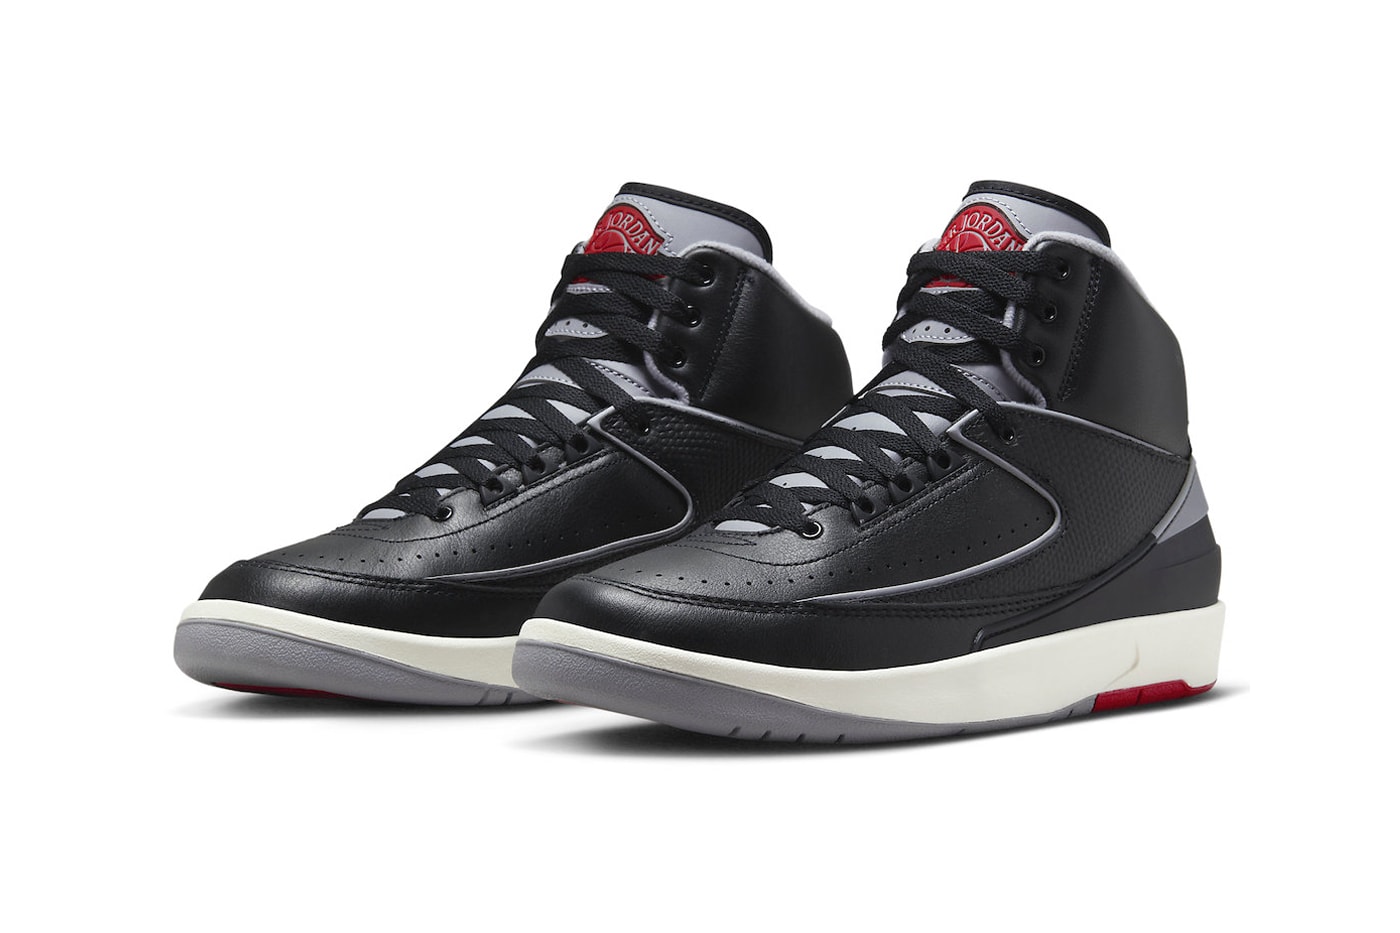 エアジョーダン3の人気OGカラーを纏った新作エアジョーダン2“ブラックセメント”が登場 Air Jordan 2 "Black Cement" Has an Official Release Date DR8884-001 black/Cement Grey-Fire Red-Sail